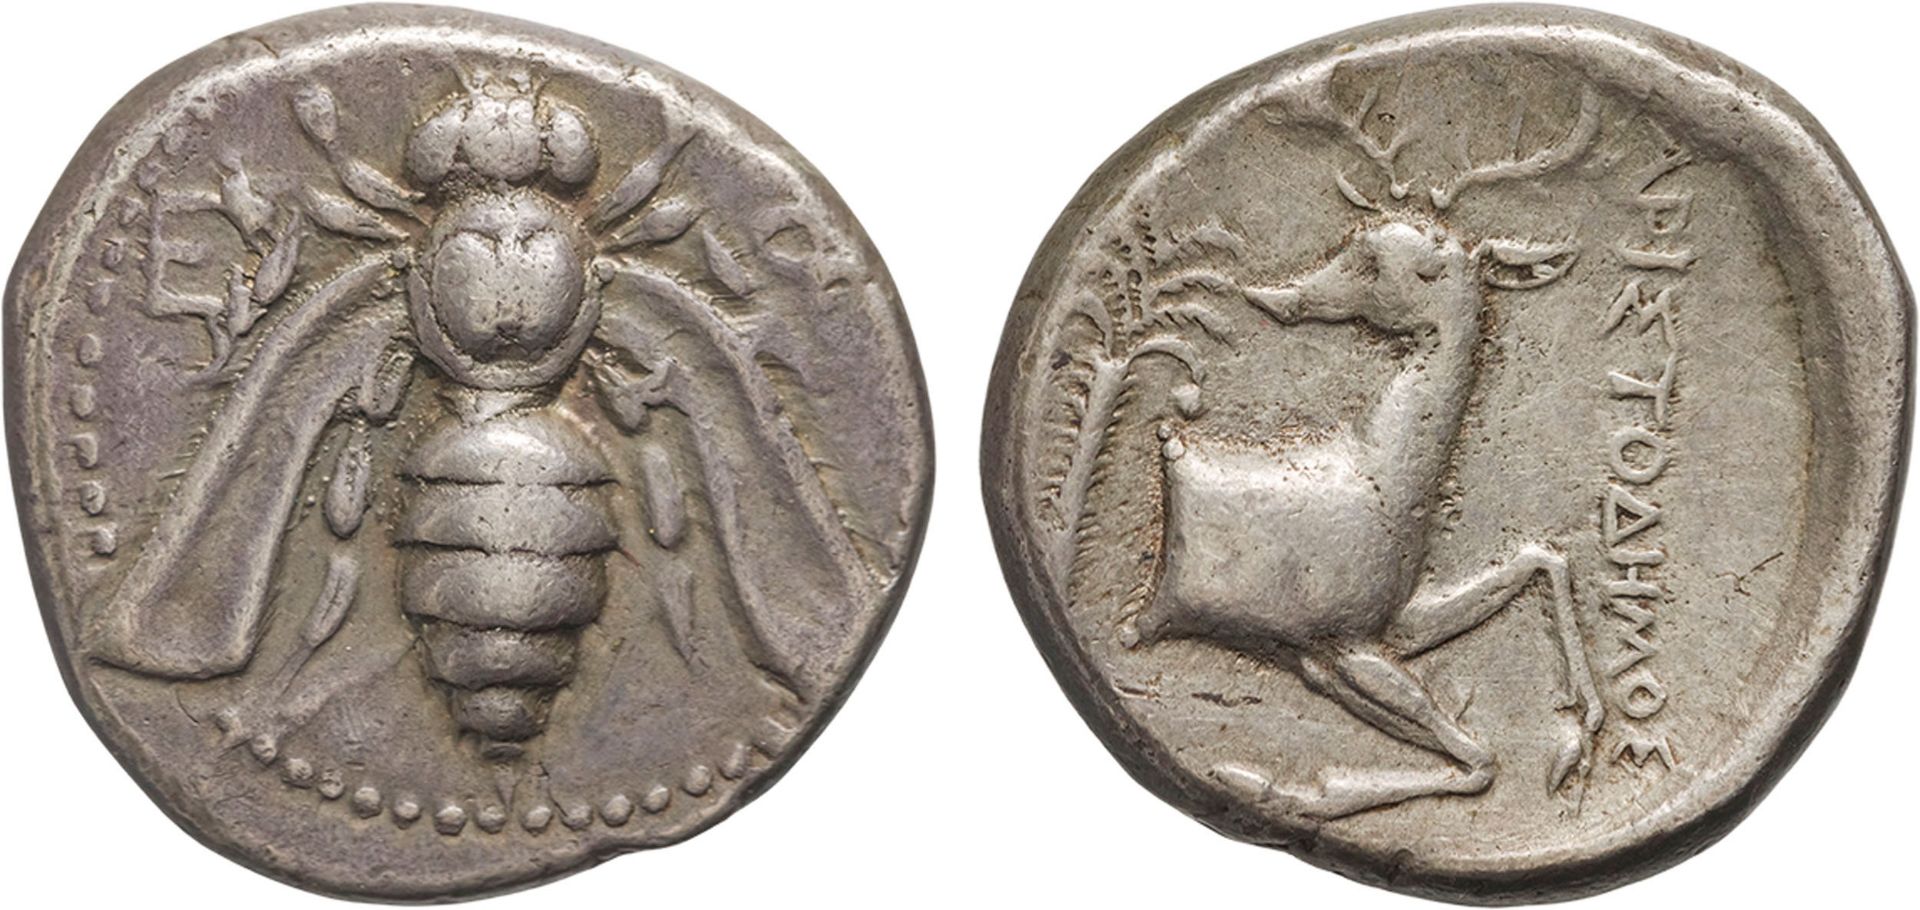 MONETE GRECHE. IONIA. EFESO (350-340 A.C.). TETRADRACMA